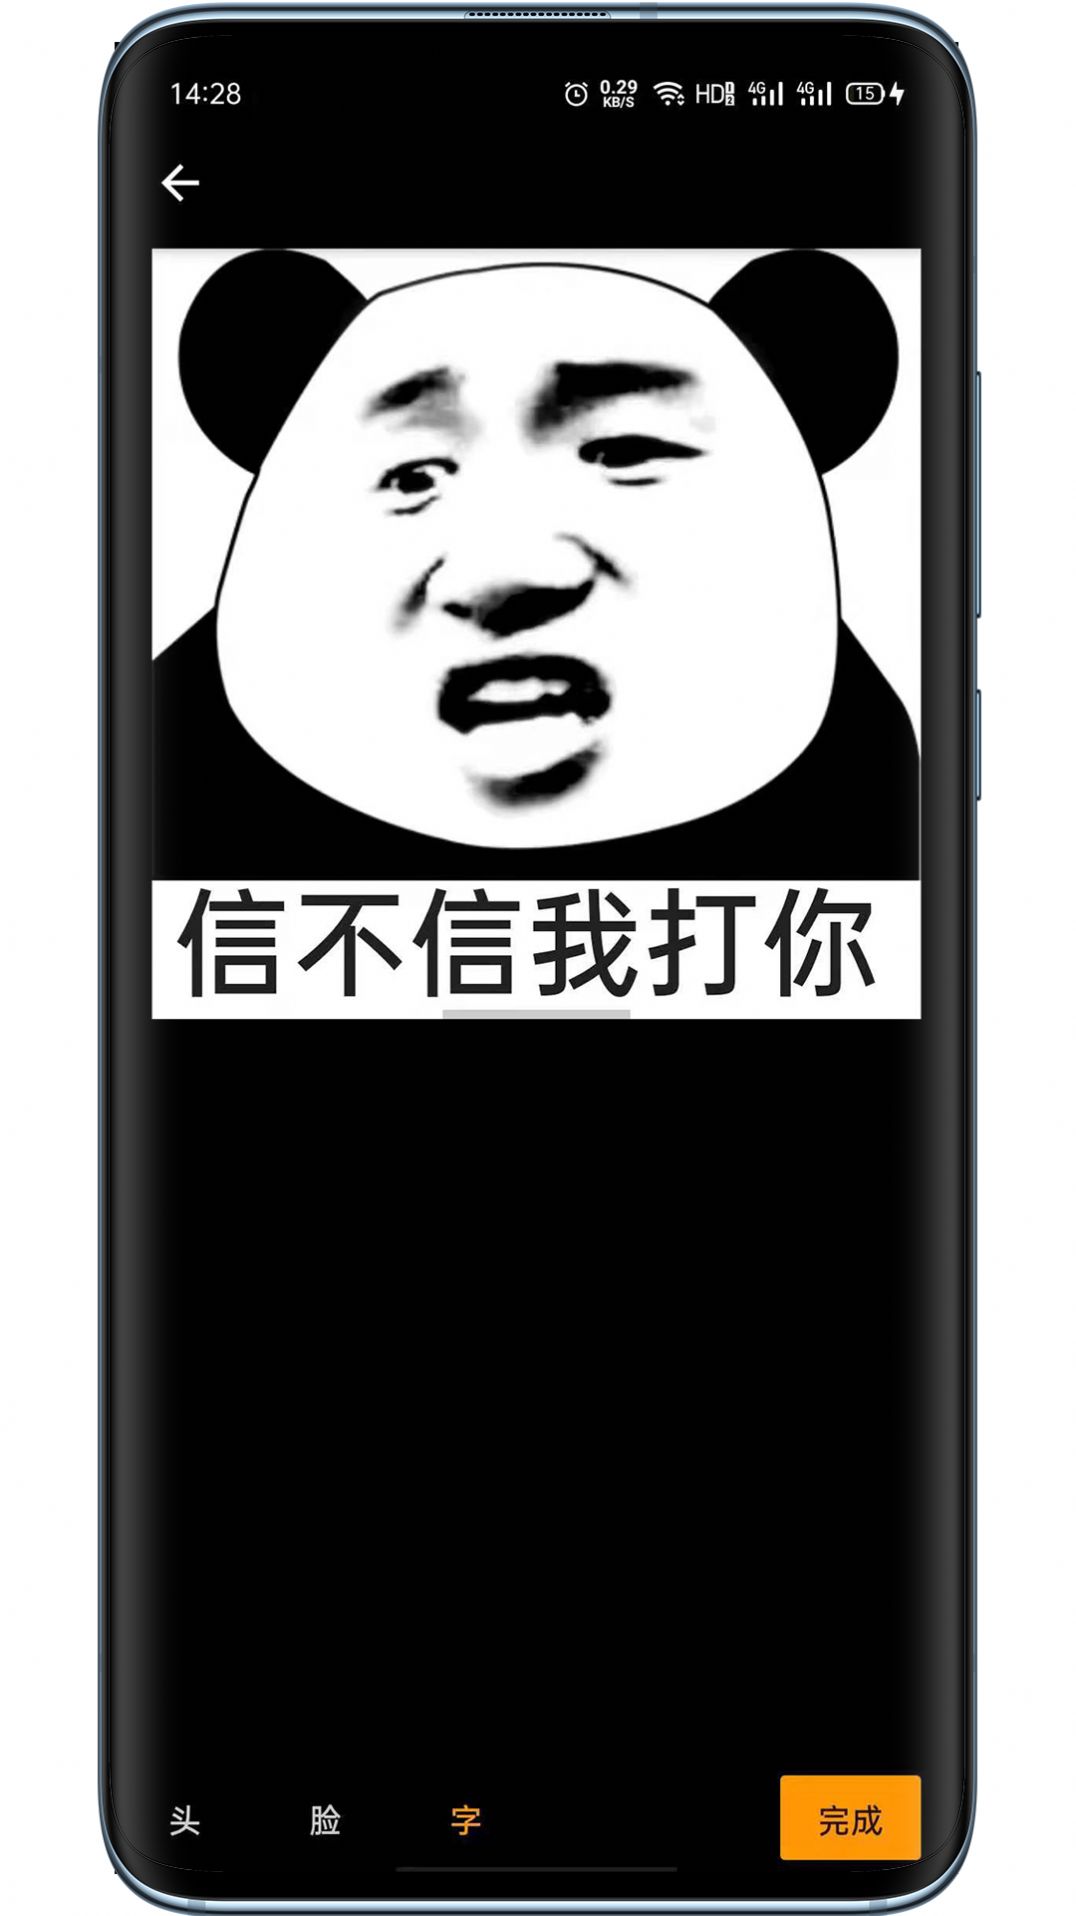 抖音熊猫表情包APP图片素材大全 1.0.0截图